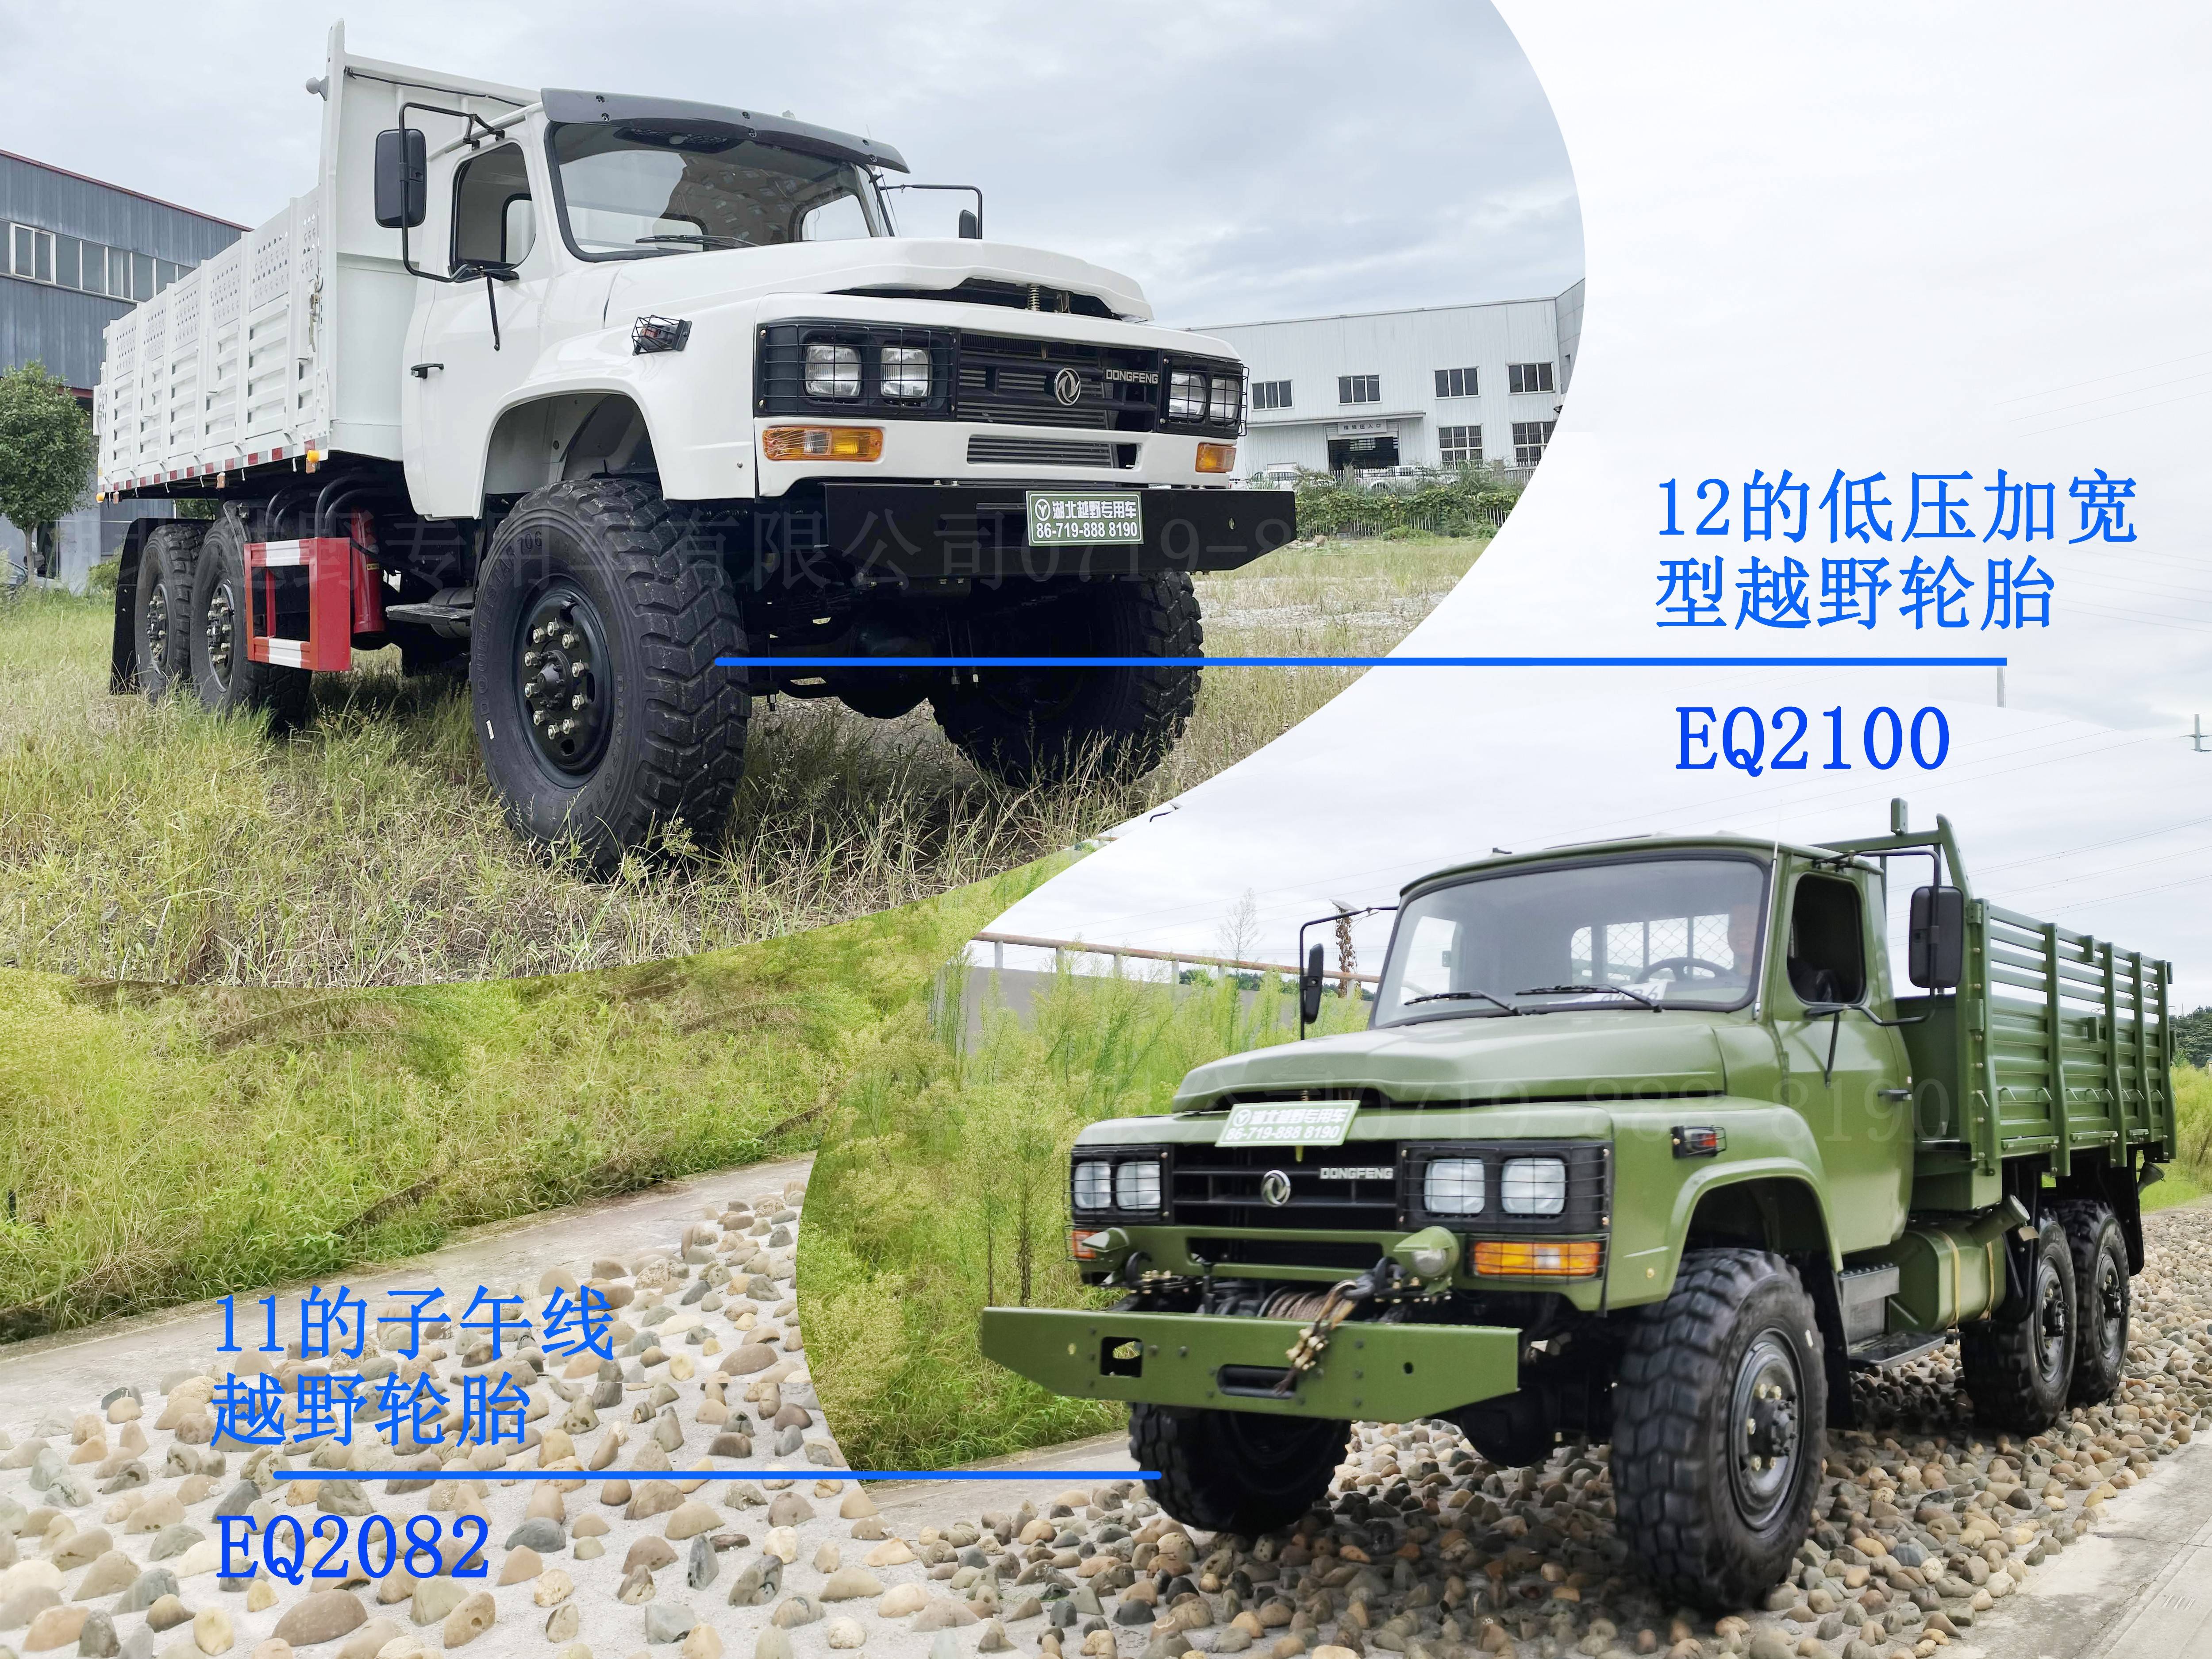 将耐造写进历史的240245军车东风eq2082eq2100越野卡车销售出口东南亚